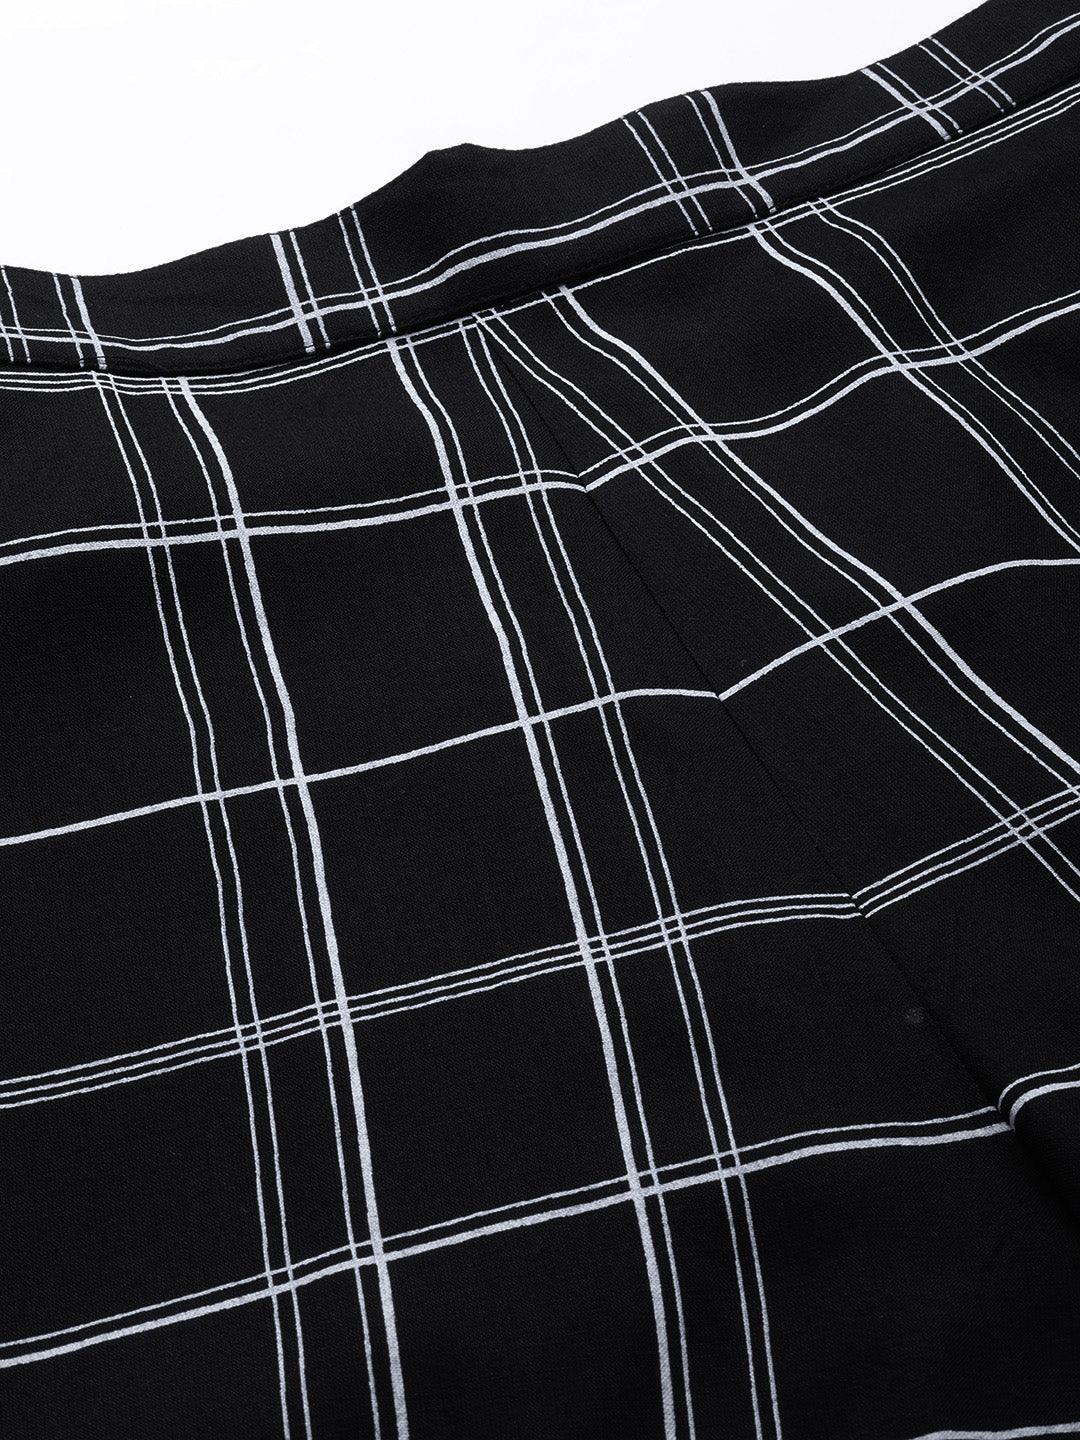 Black Printed Cotton Night Suit - Libas